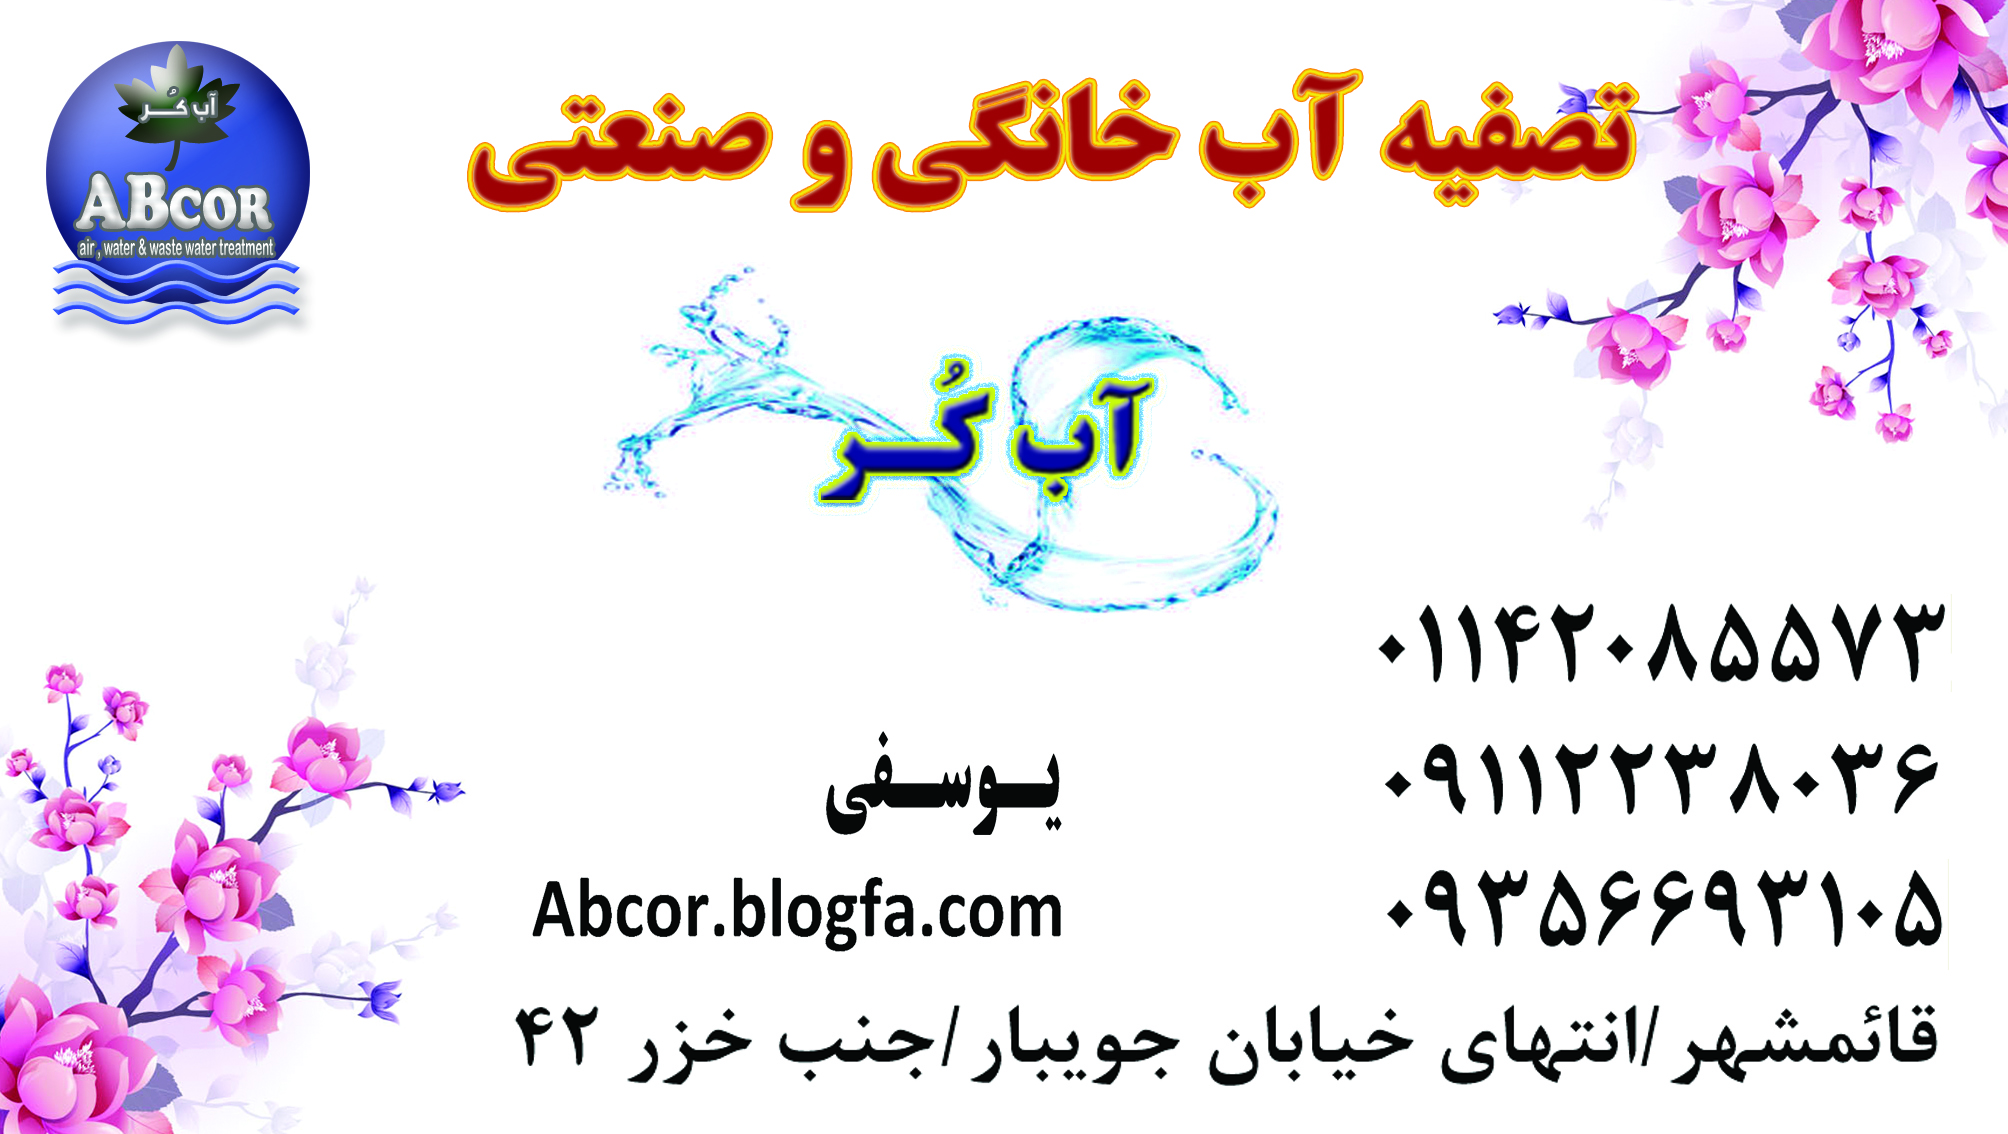 فروشگاه تصفیه آب خانگی و صنعتی یوسفی / قائمشهر